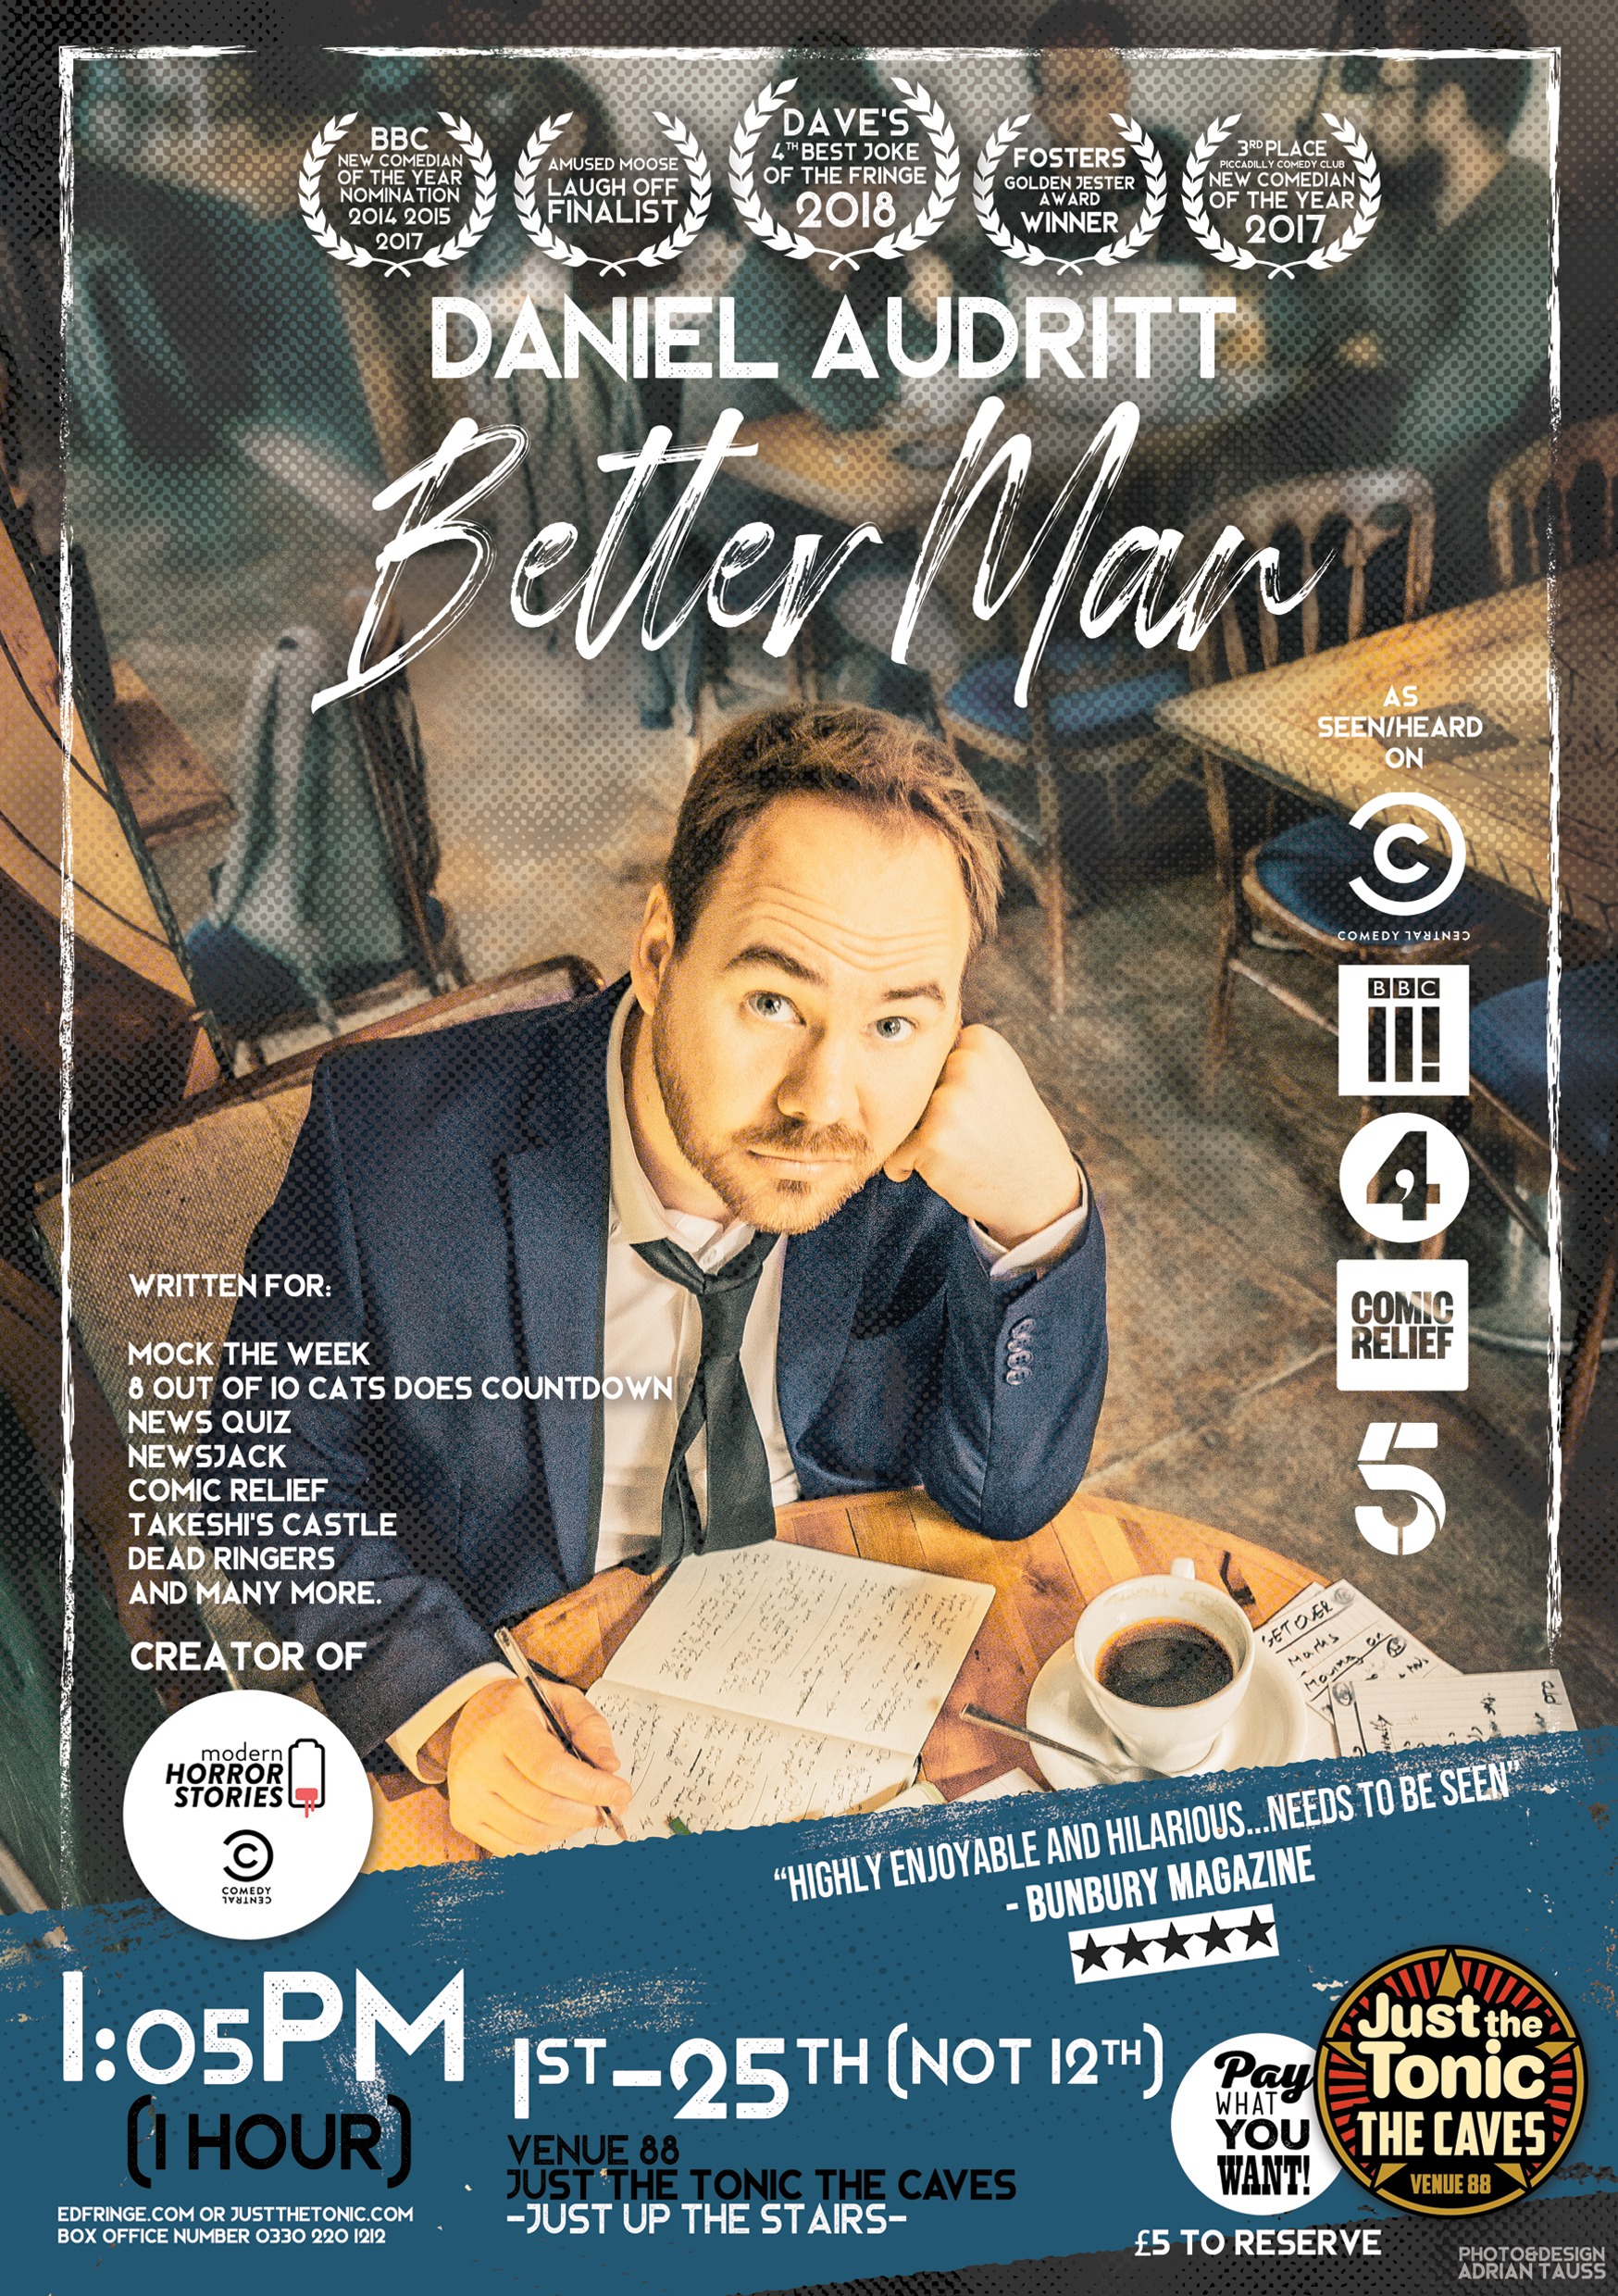 The poster for Daniel Audritt: Better Man